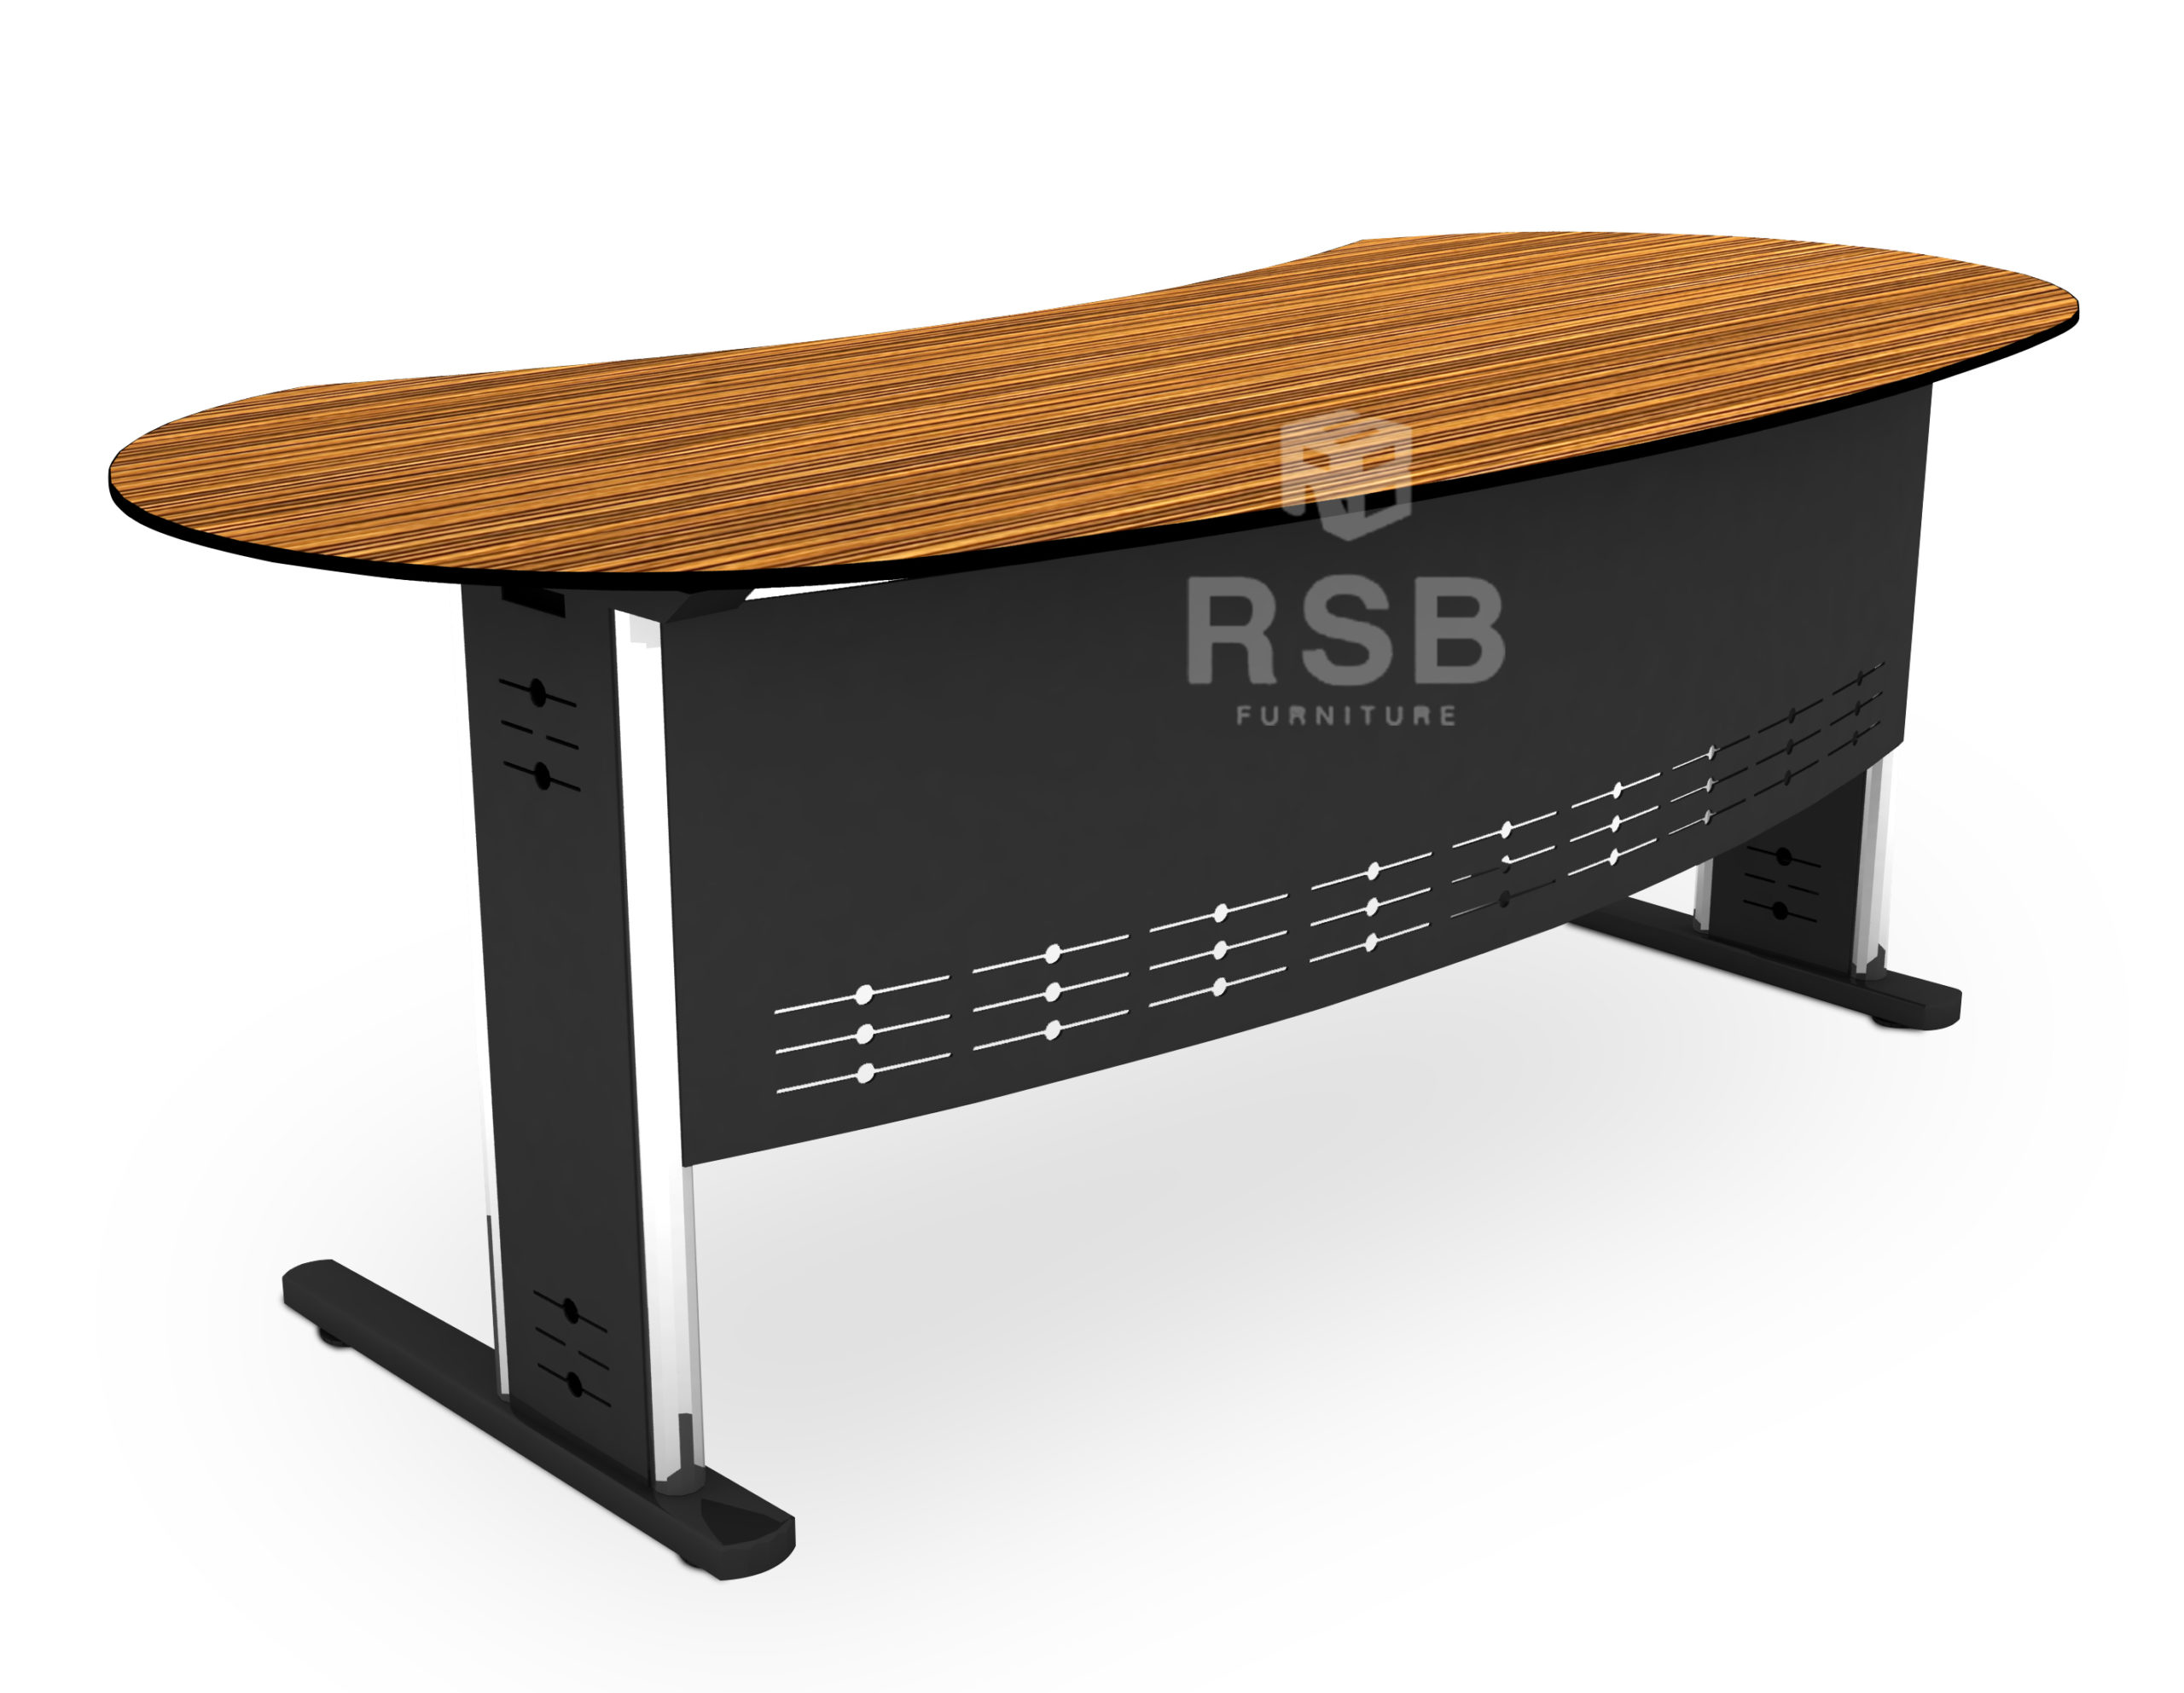 โต๊ะผู้บริหาร TOP HIGH GLOSS หน้าโต๊ะโค้ง ขนาด W200 x D90 x H75 cm รหัส 4288